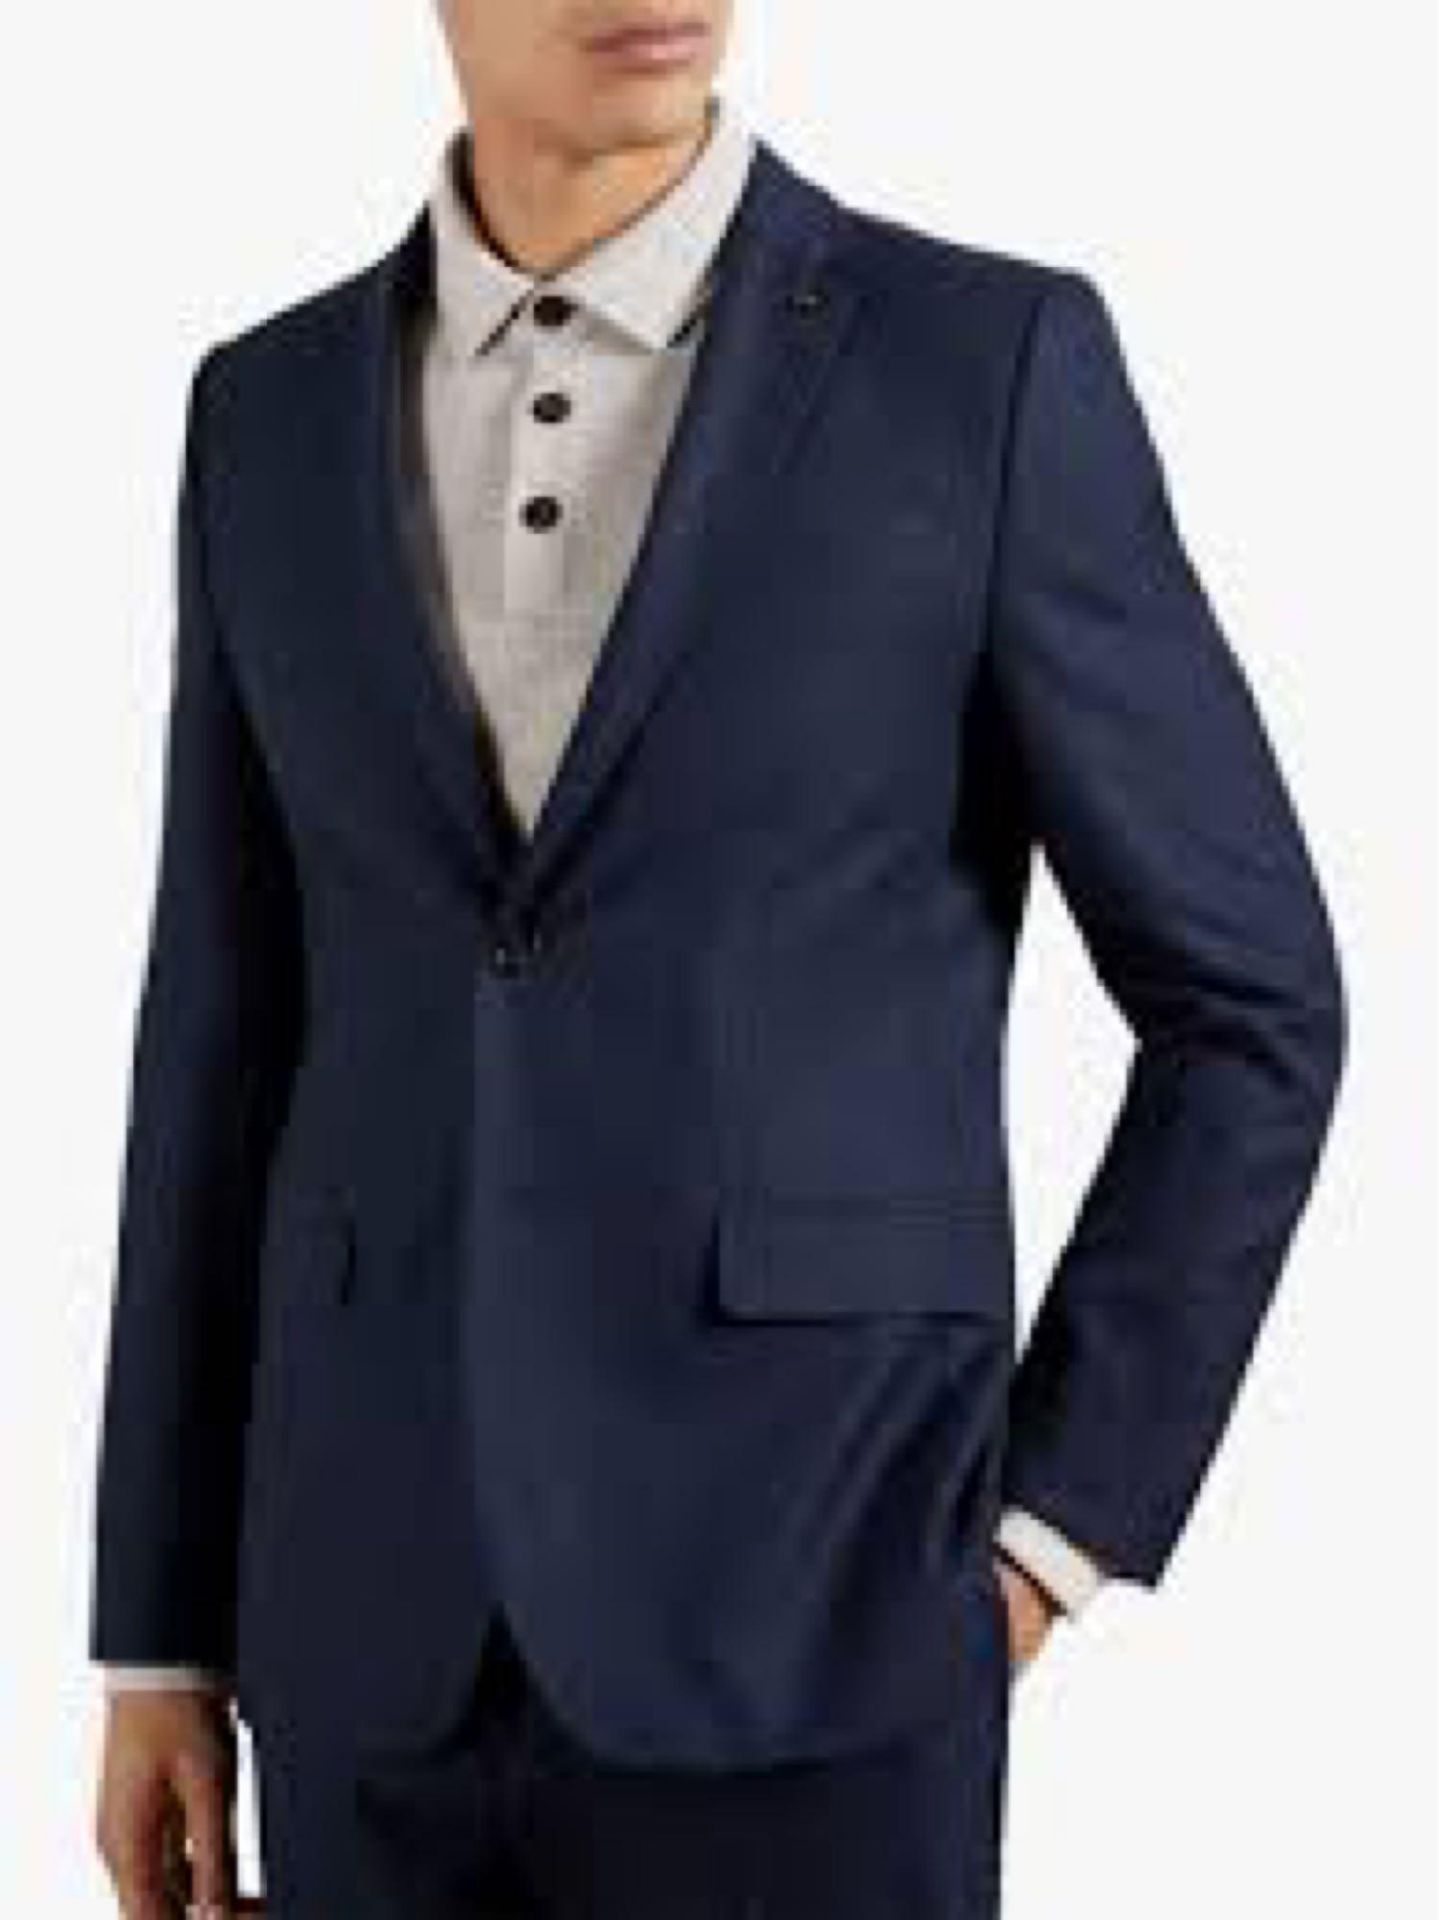 RRP £170 Bagged Size 46 Regular Ted Baker Gents Navy Blue Designer Suit Jacket